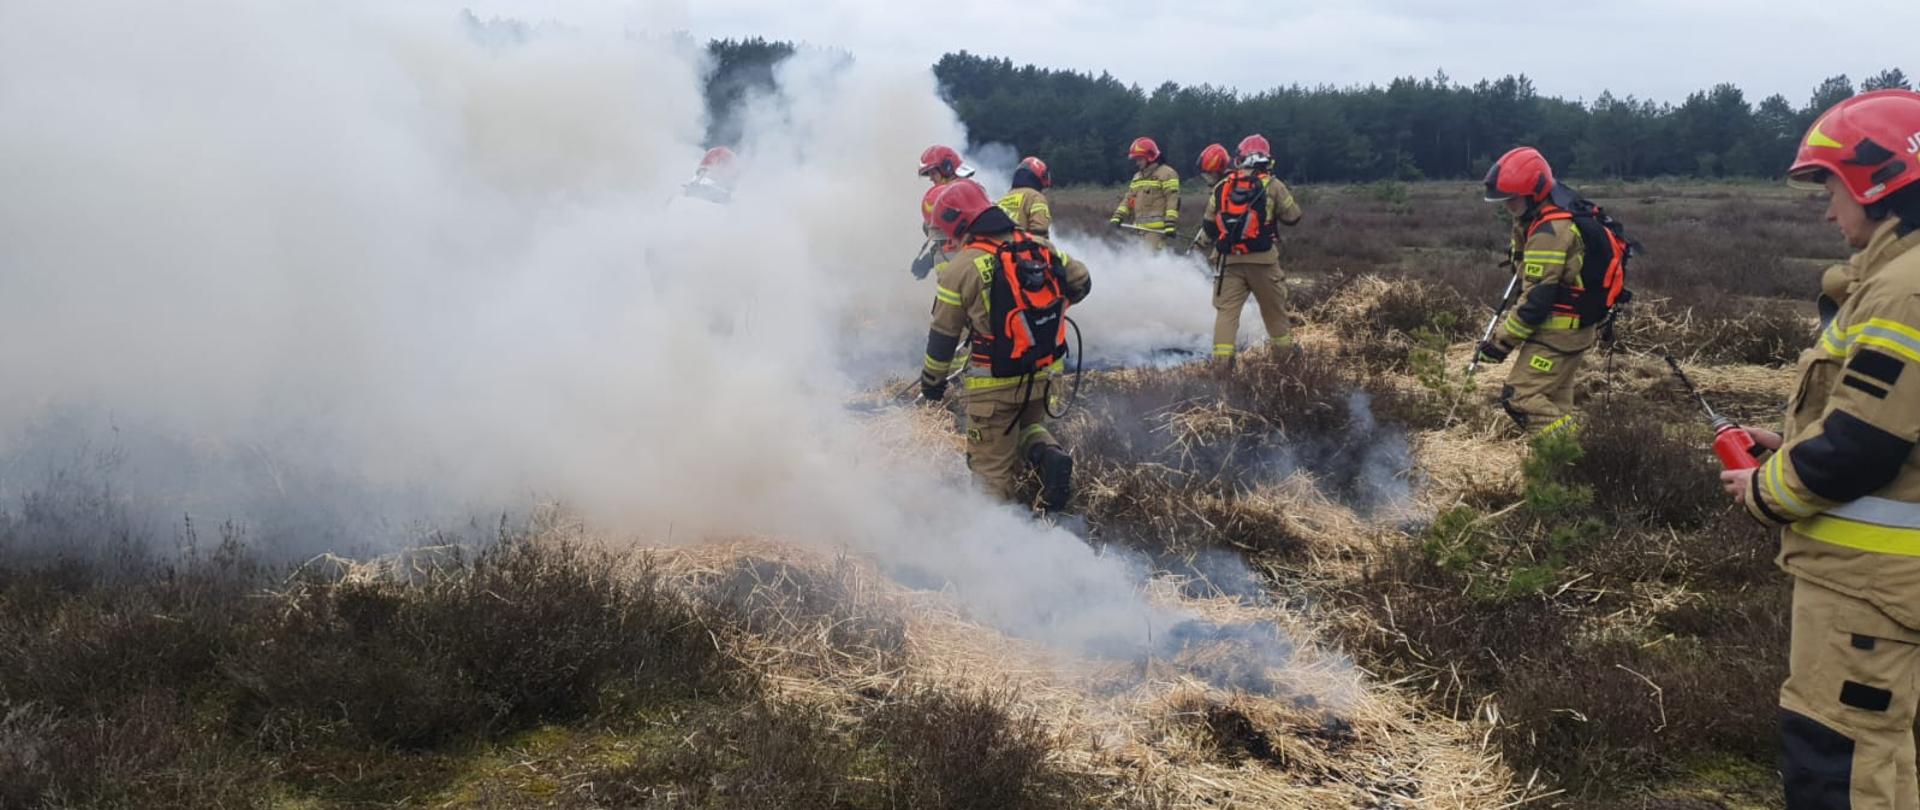 Warsztaty ratownicze grup specjalistycznych – dzień II - strażacy gaszą łakę sprzętem osobistym